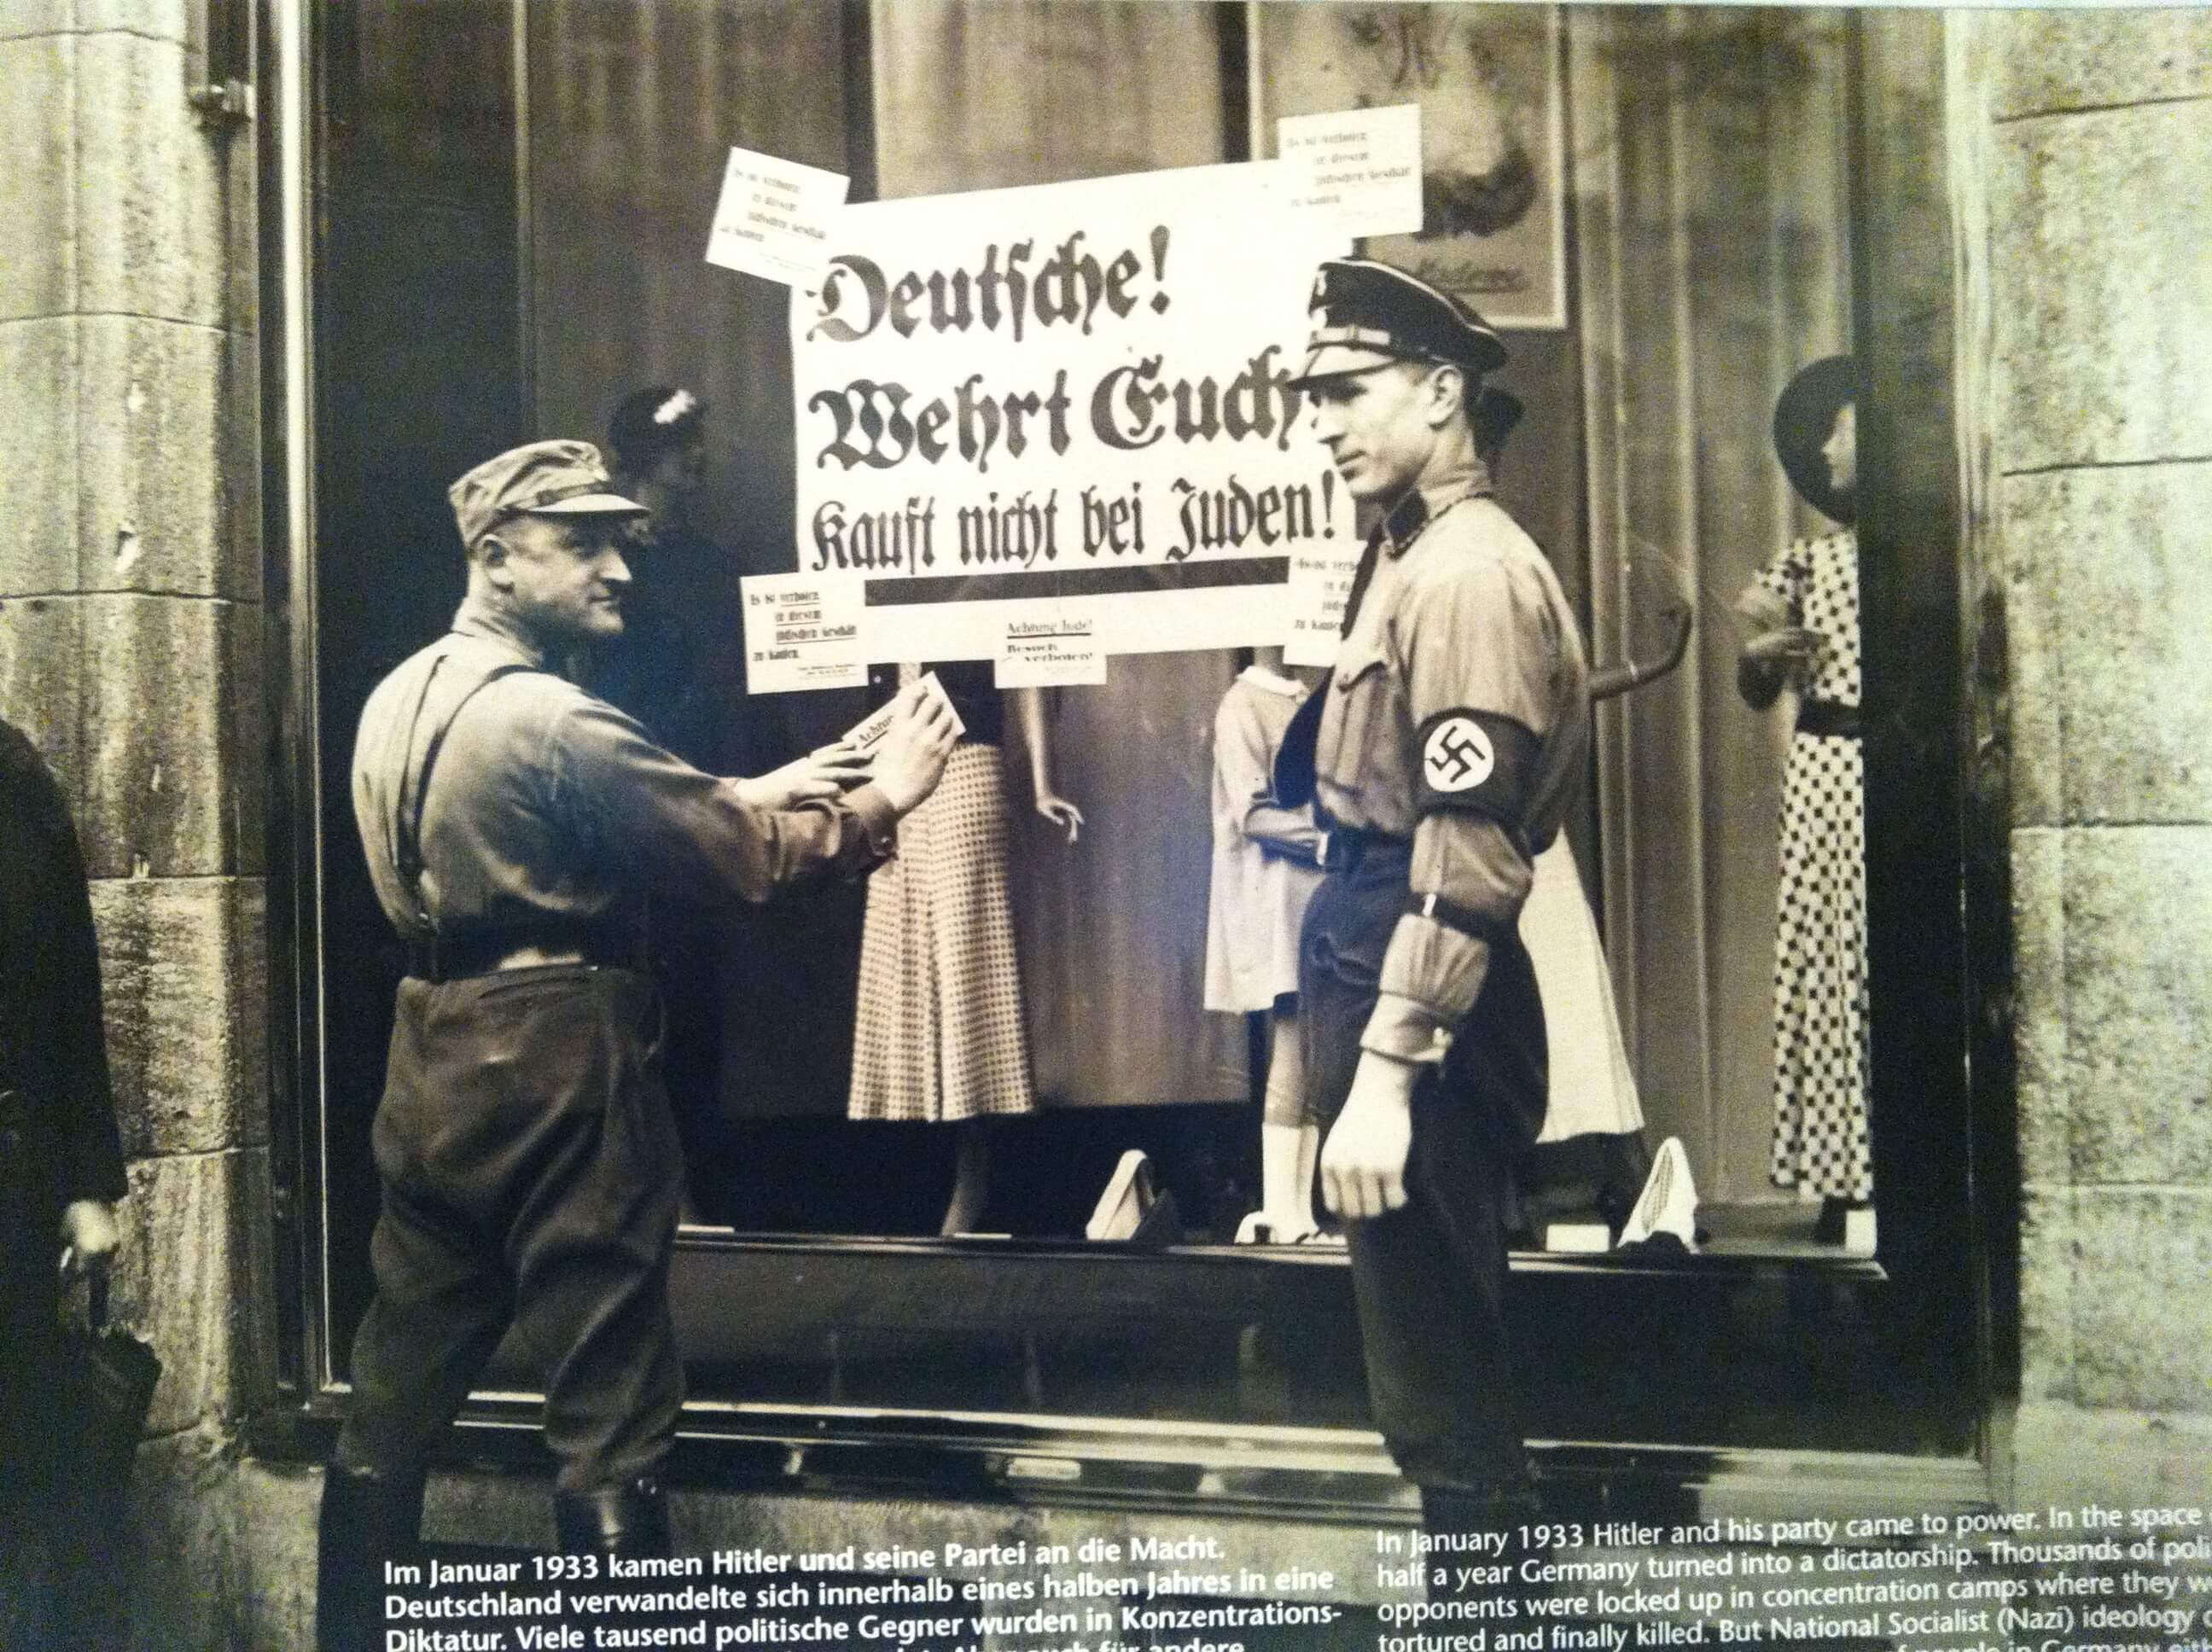 תמונה של תליית שלט האוסר על רכישה בחנויות של יהודים ערב מלחמ העולם השניה. צולמה בביקור במוזיאון לזכרה של אנה פרנק בברלין., מארס 2013.